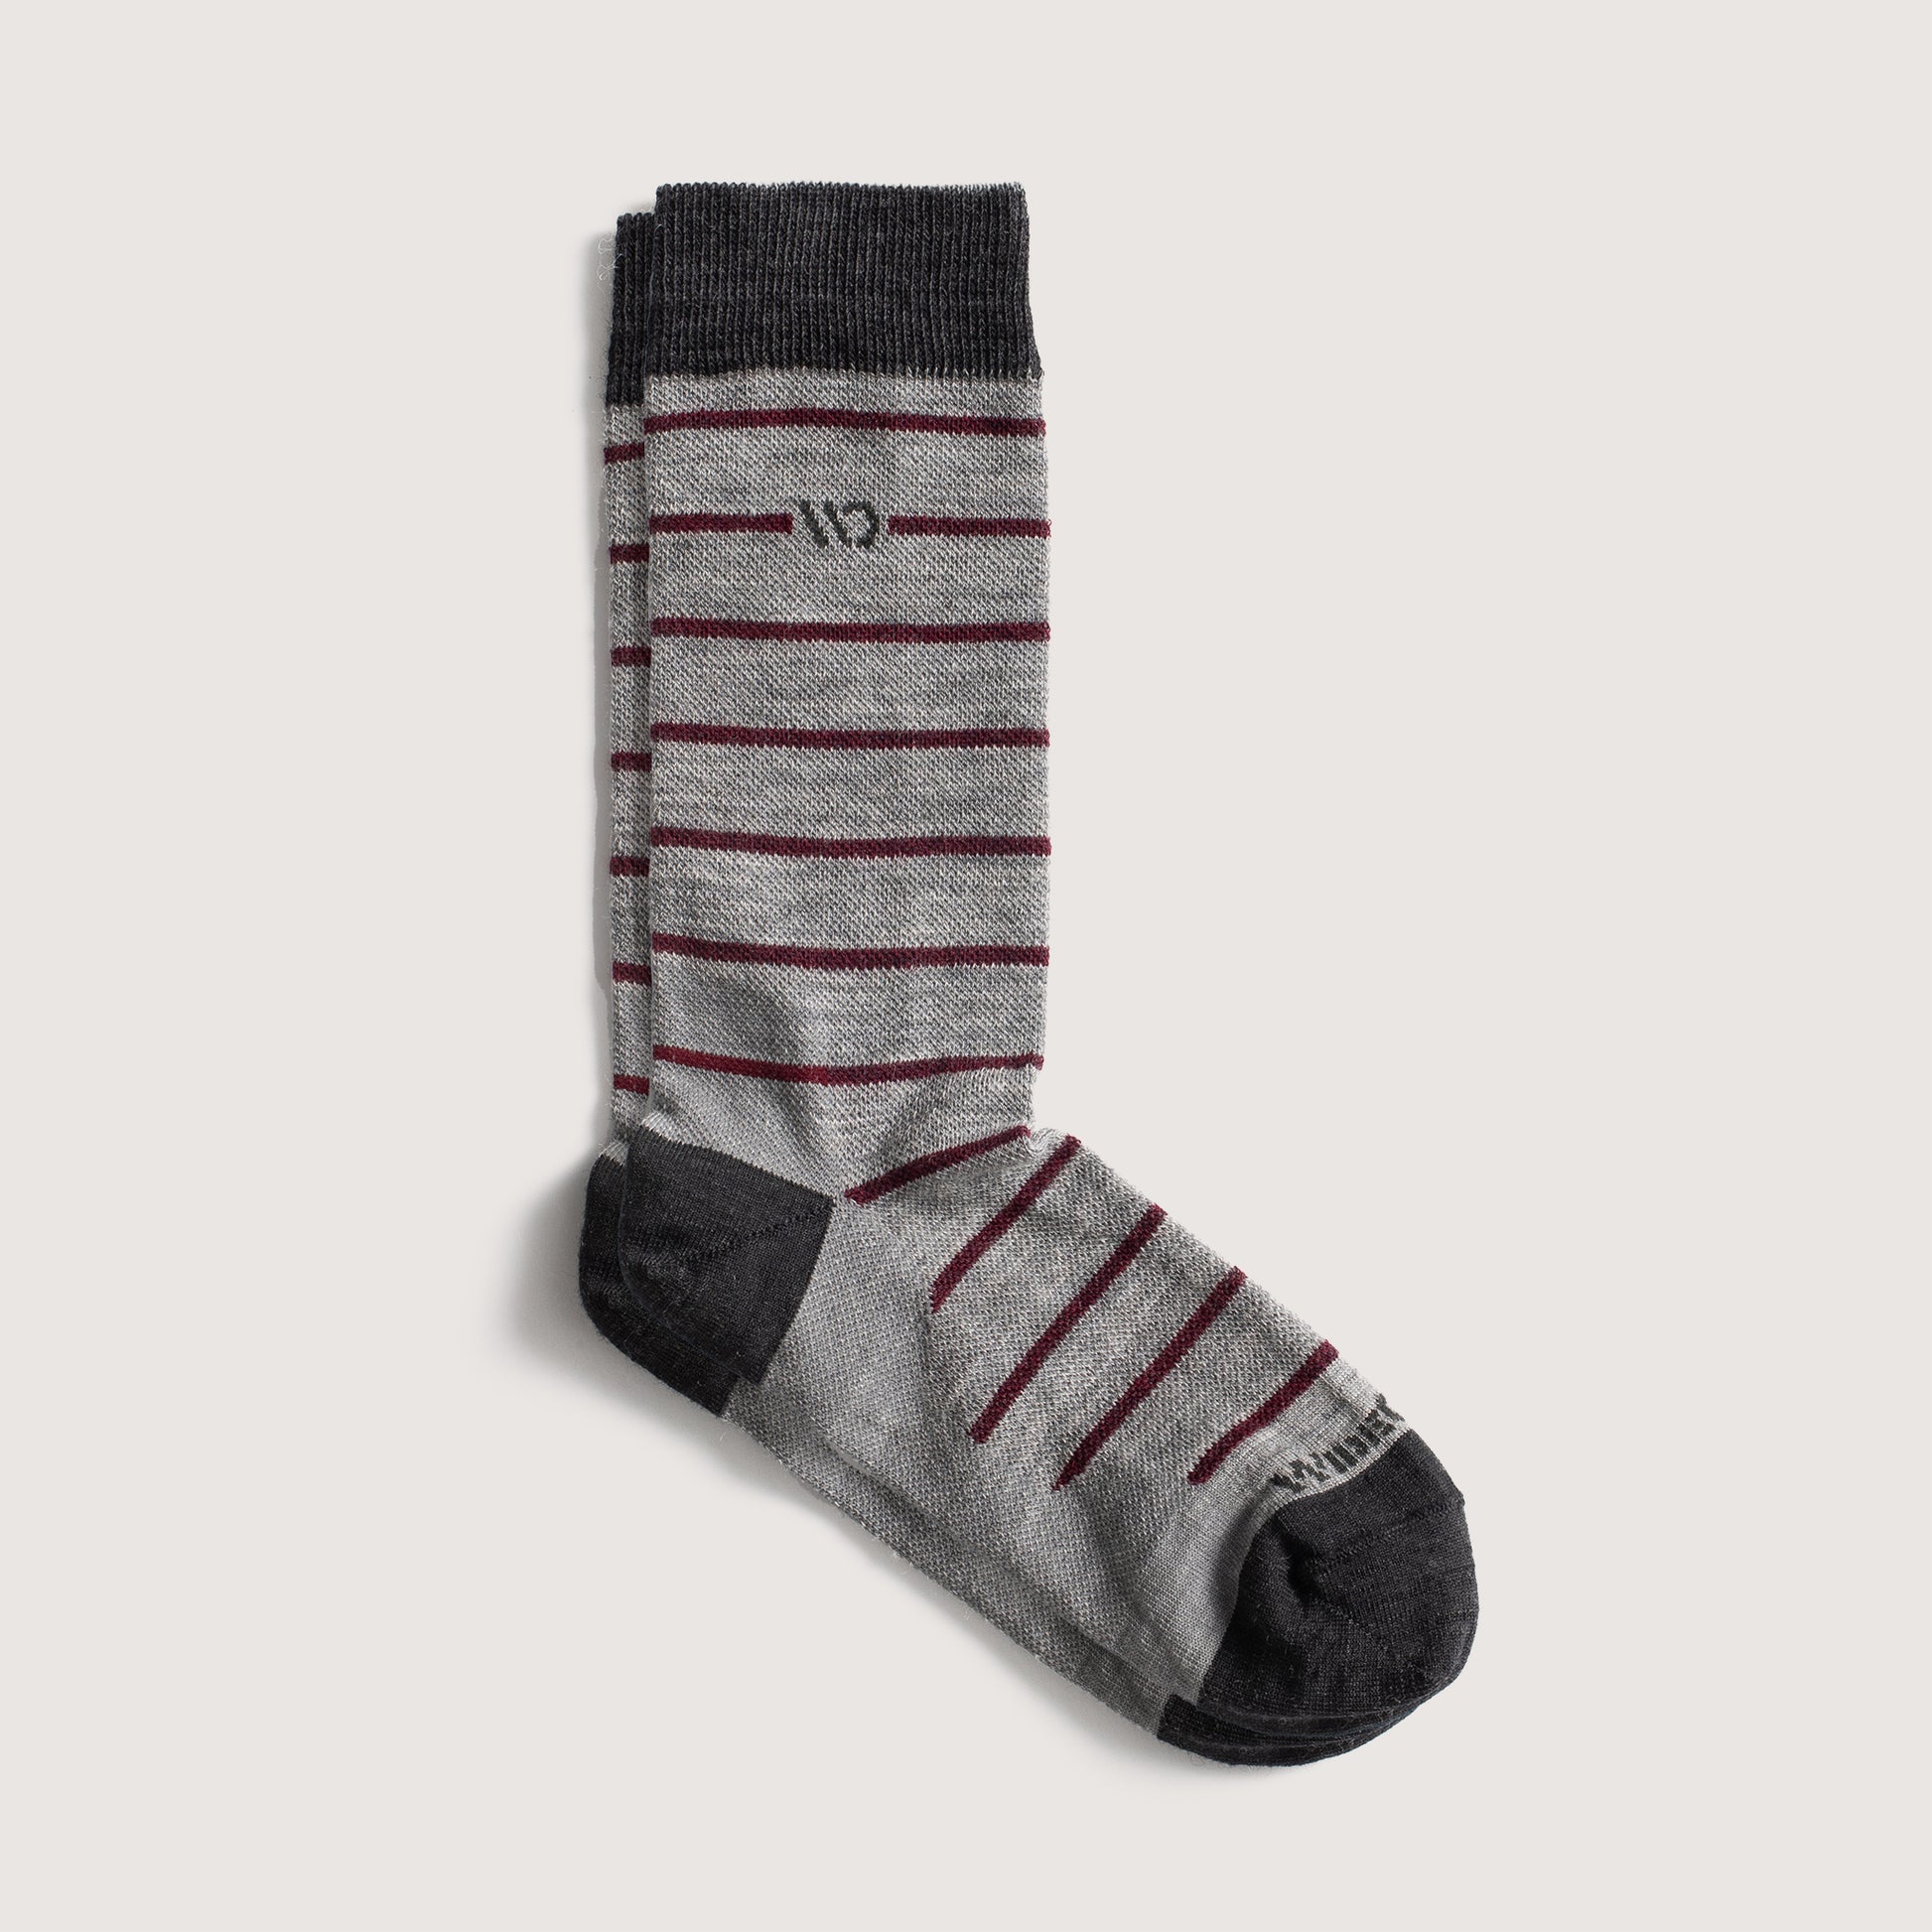 Flat socks featuring dark gray toe and logo, light gray body, maroon stripes --Light Gray